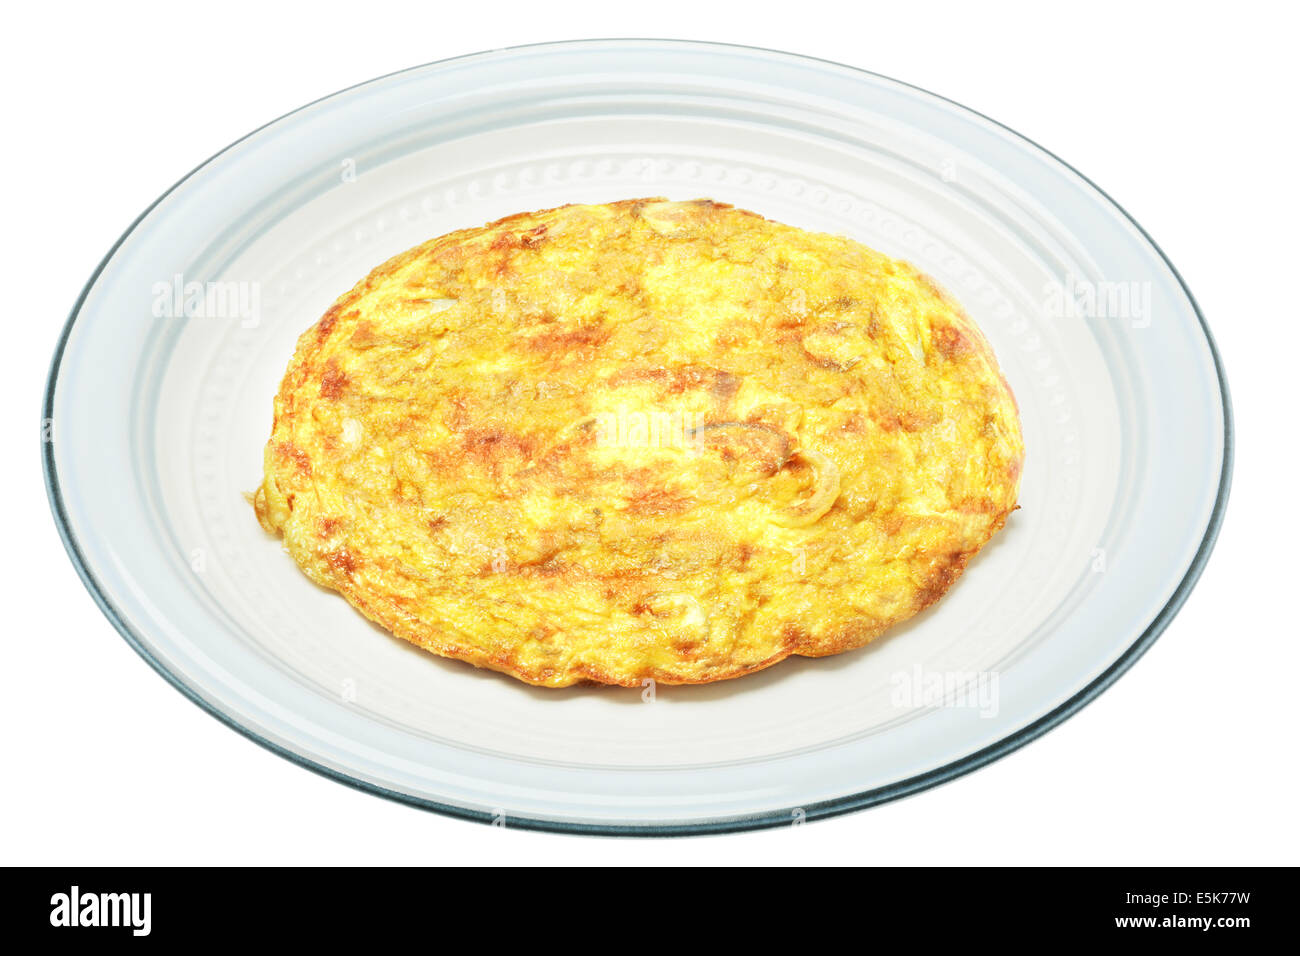 Egg Omelette In Ceramic Plate On White Background Stock Photo